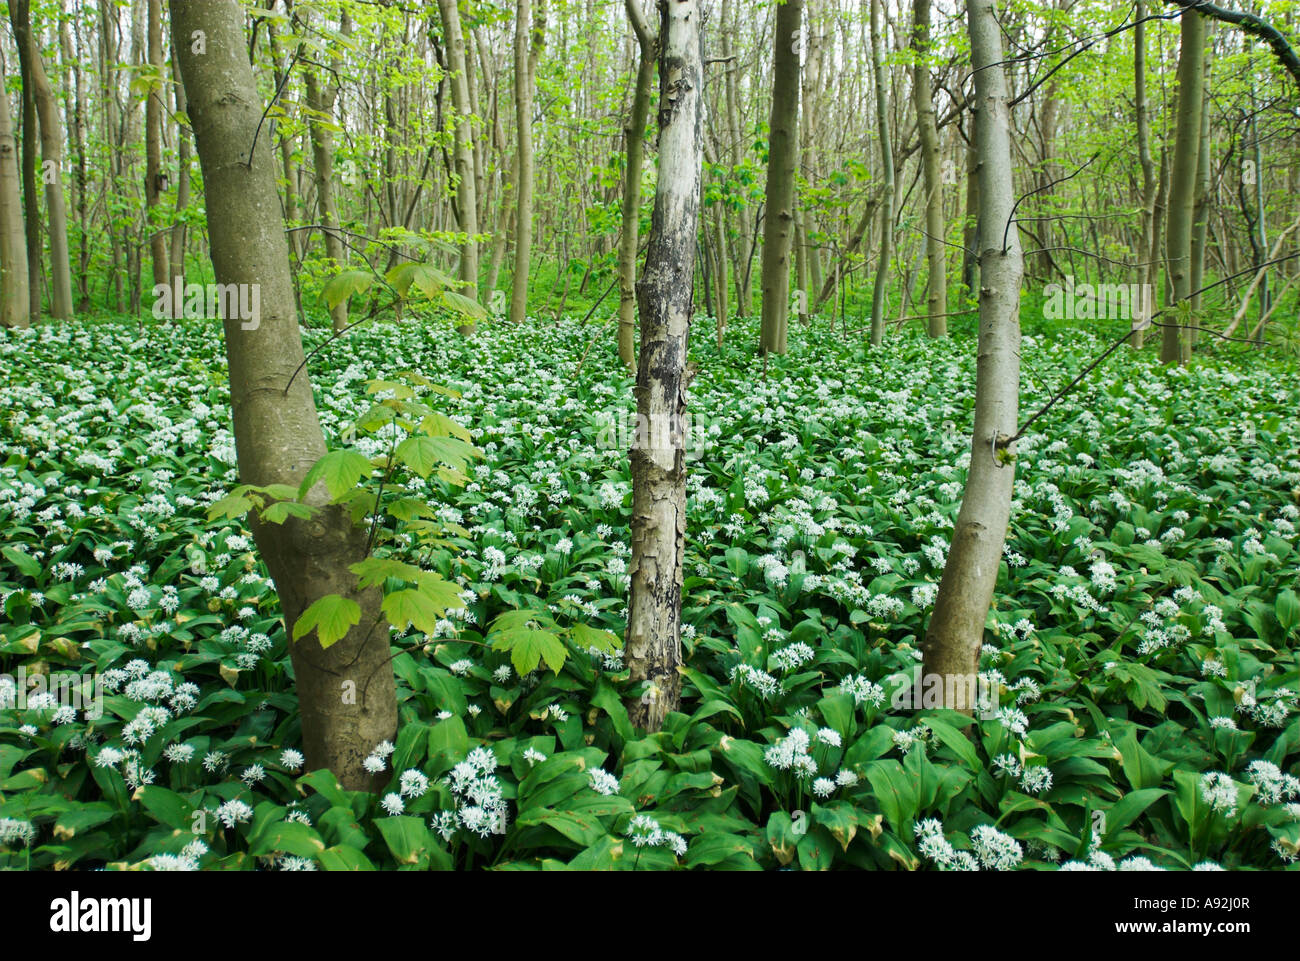 Holz Knoblauch in voller Blüte auf der Greifswalder Oie Insel, Insel Usedom, Mecklenburg Western Pomerania, Deutschland, Europa Stockfoto